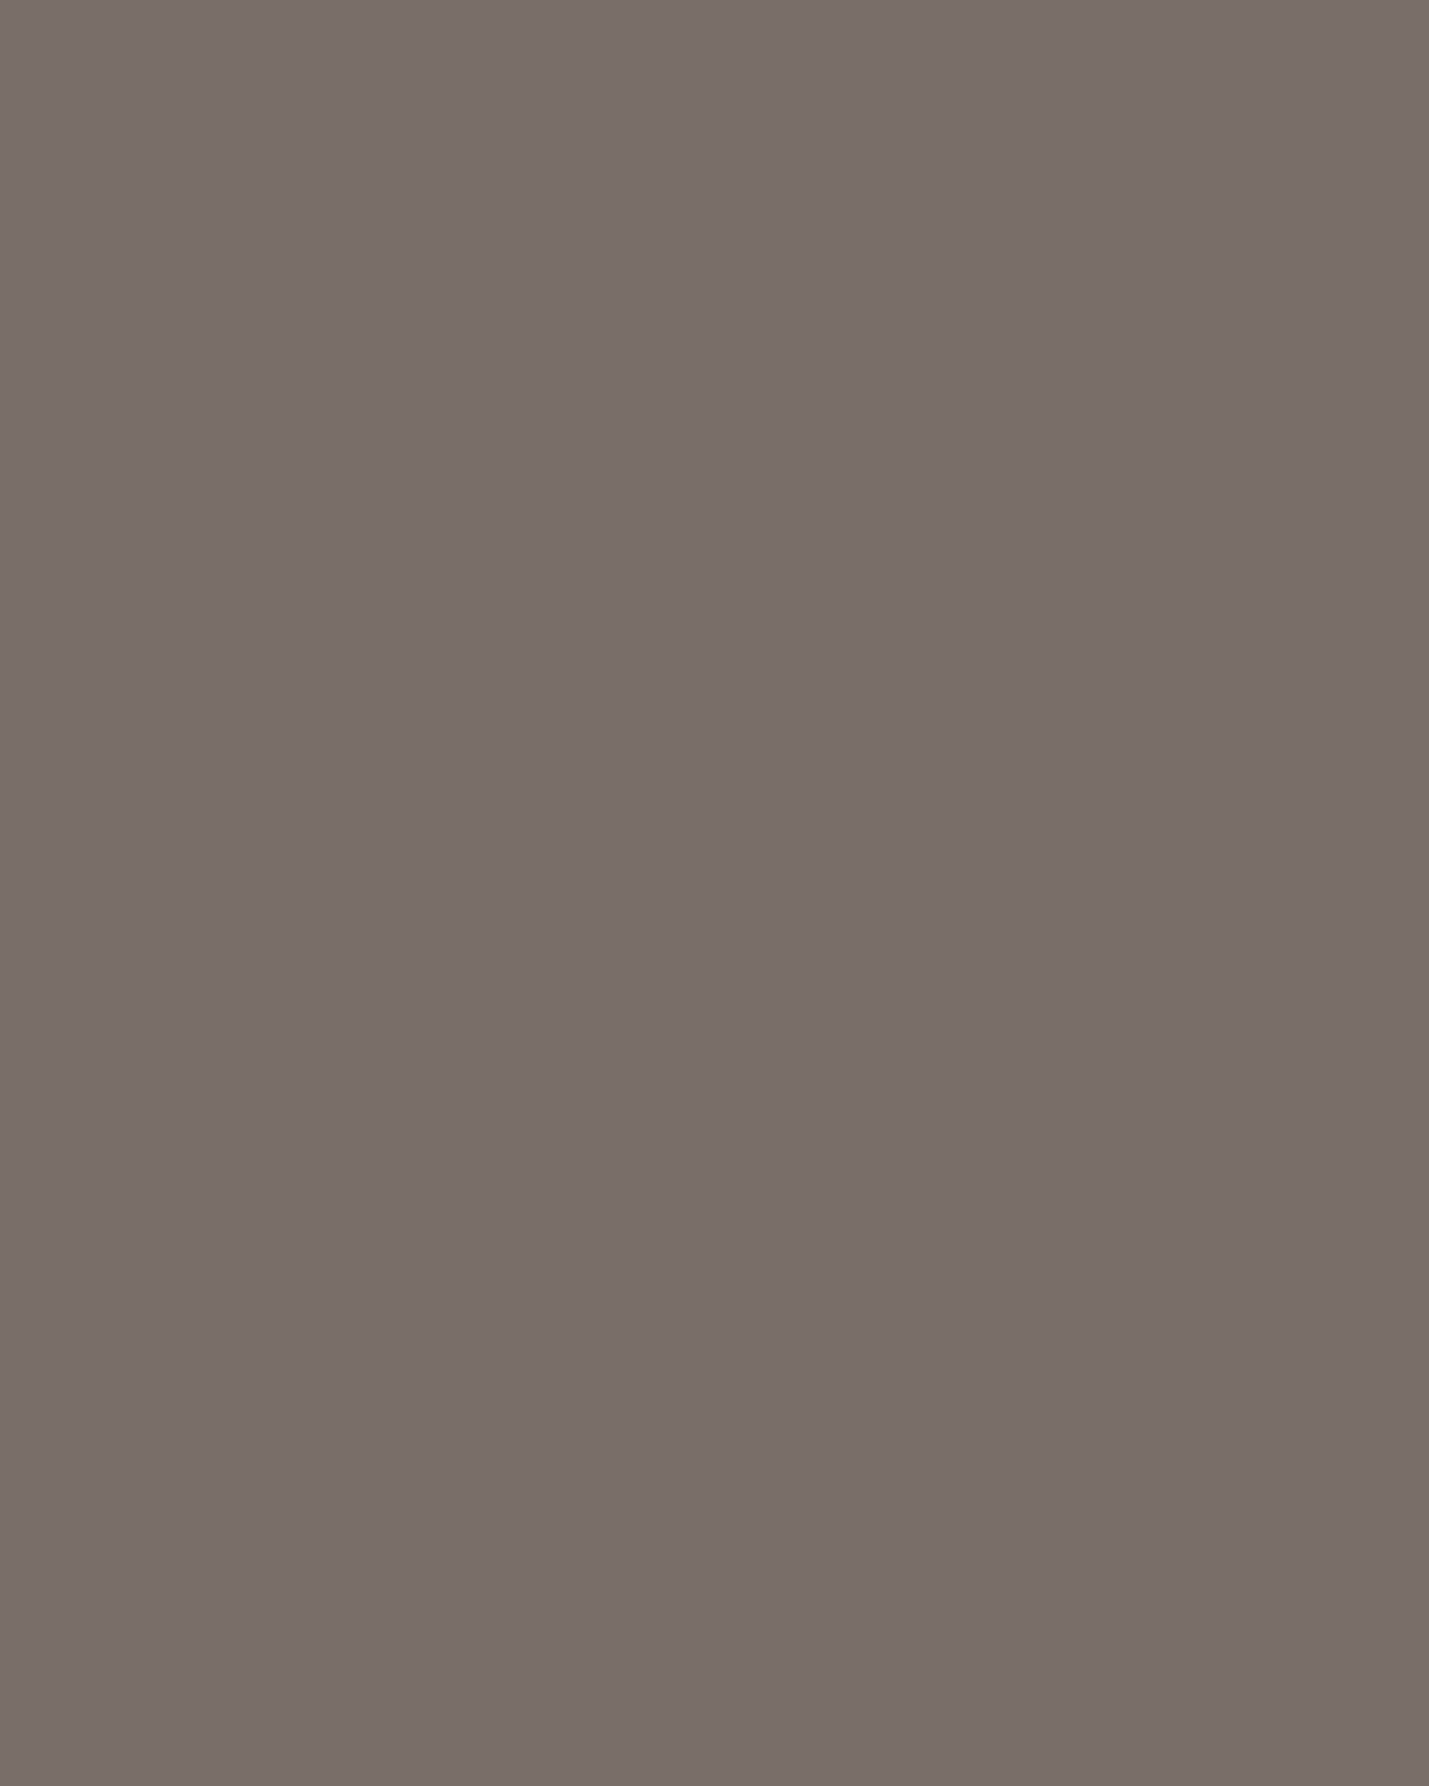 Арчак (изображен на картине Александра Литовченко «Иван Грозный показывает сокровища английскому послу Горсею»). Москва, мастерские Кремля, вторая половина XVII века; алтабас — Иран, вторая половина XVII века. Музеи Московского Кремля, Москва